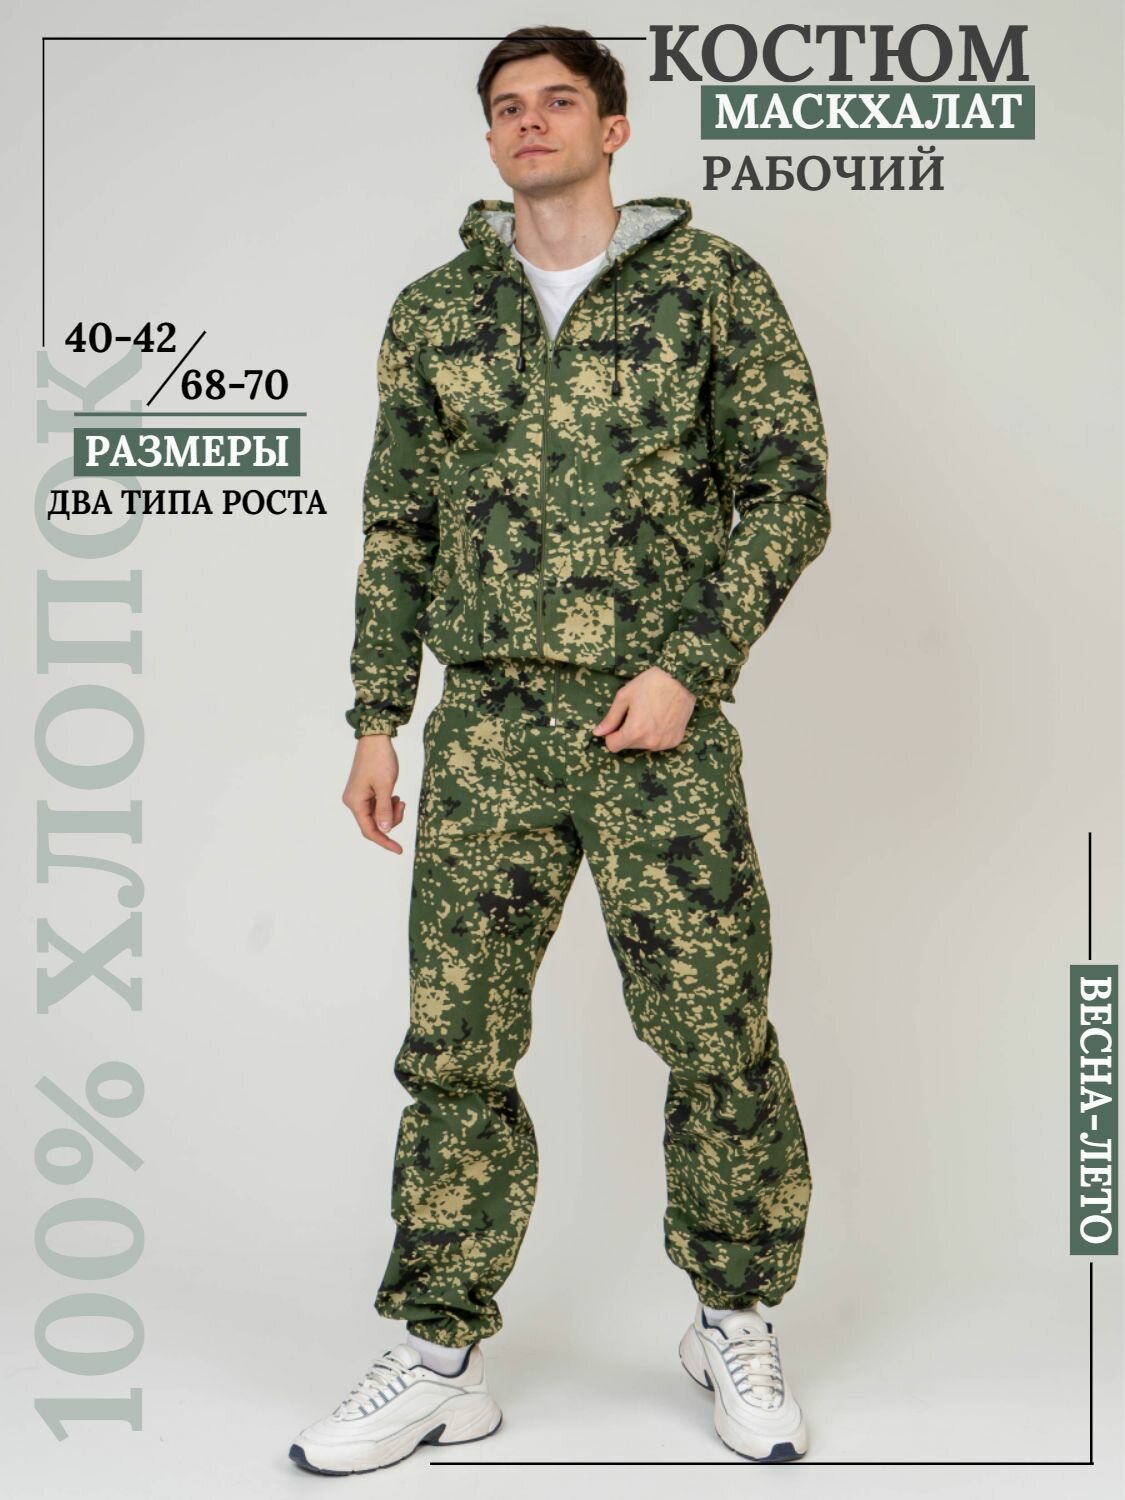 Костюм мужской камуфляжный для рыбалки и активного отдыха ПромДизайн (куртка+брюки), 100% хлопок/ Костюм маскировочный, 60-182RU